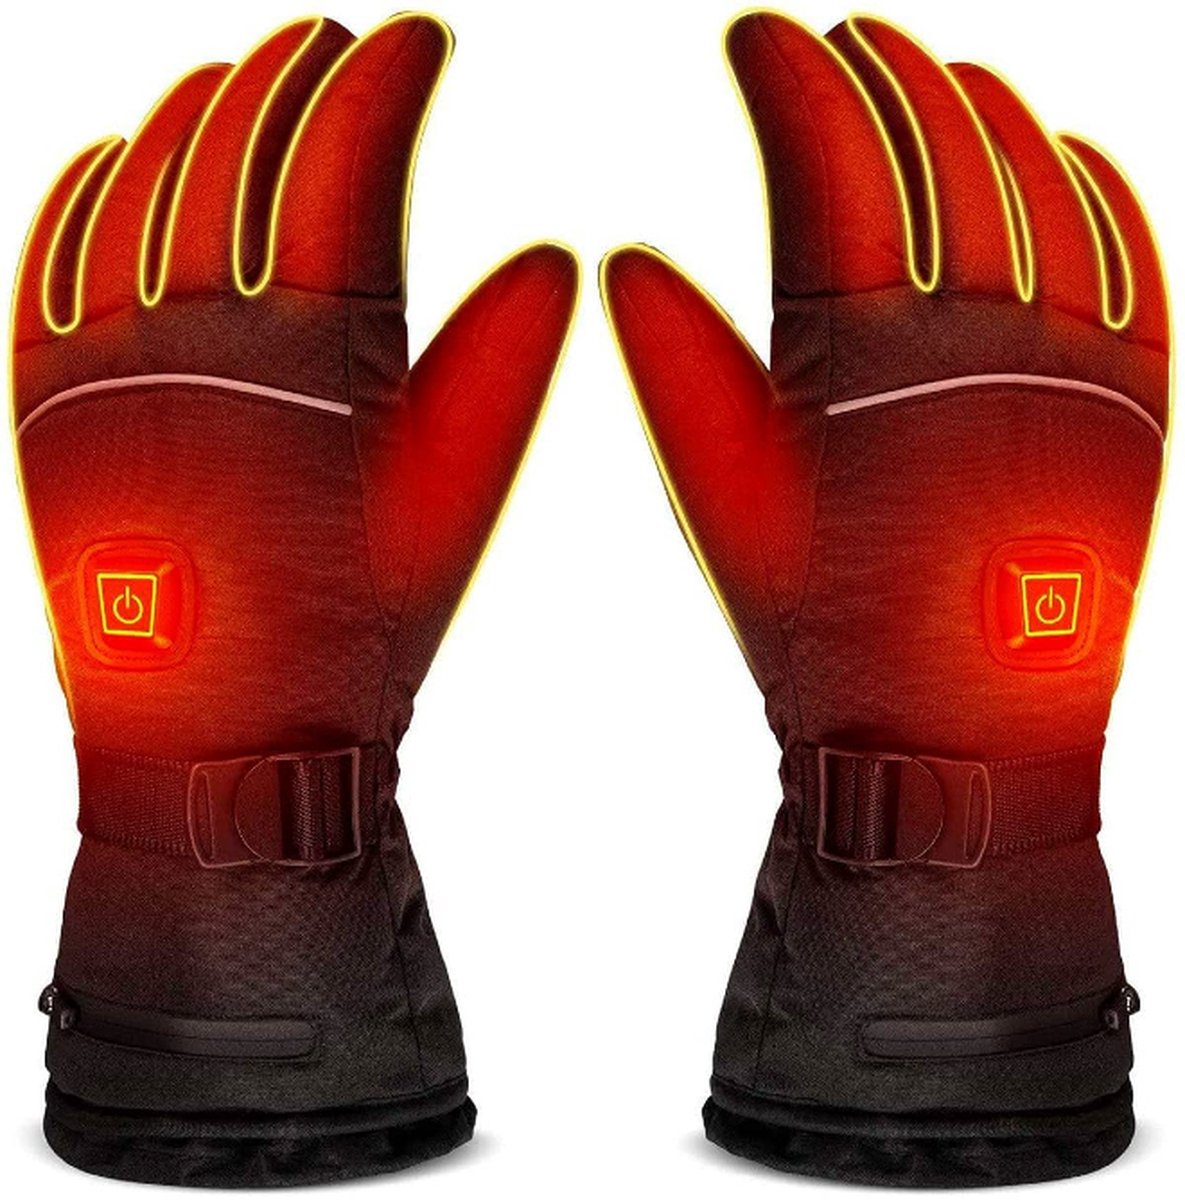 Elektrisch verwarmbare handschoenen